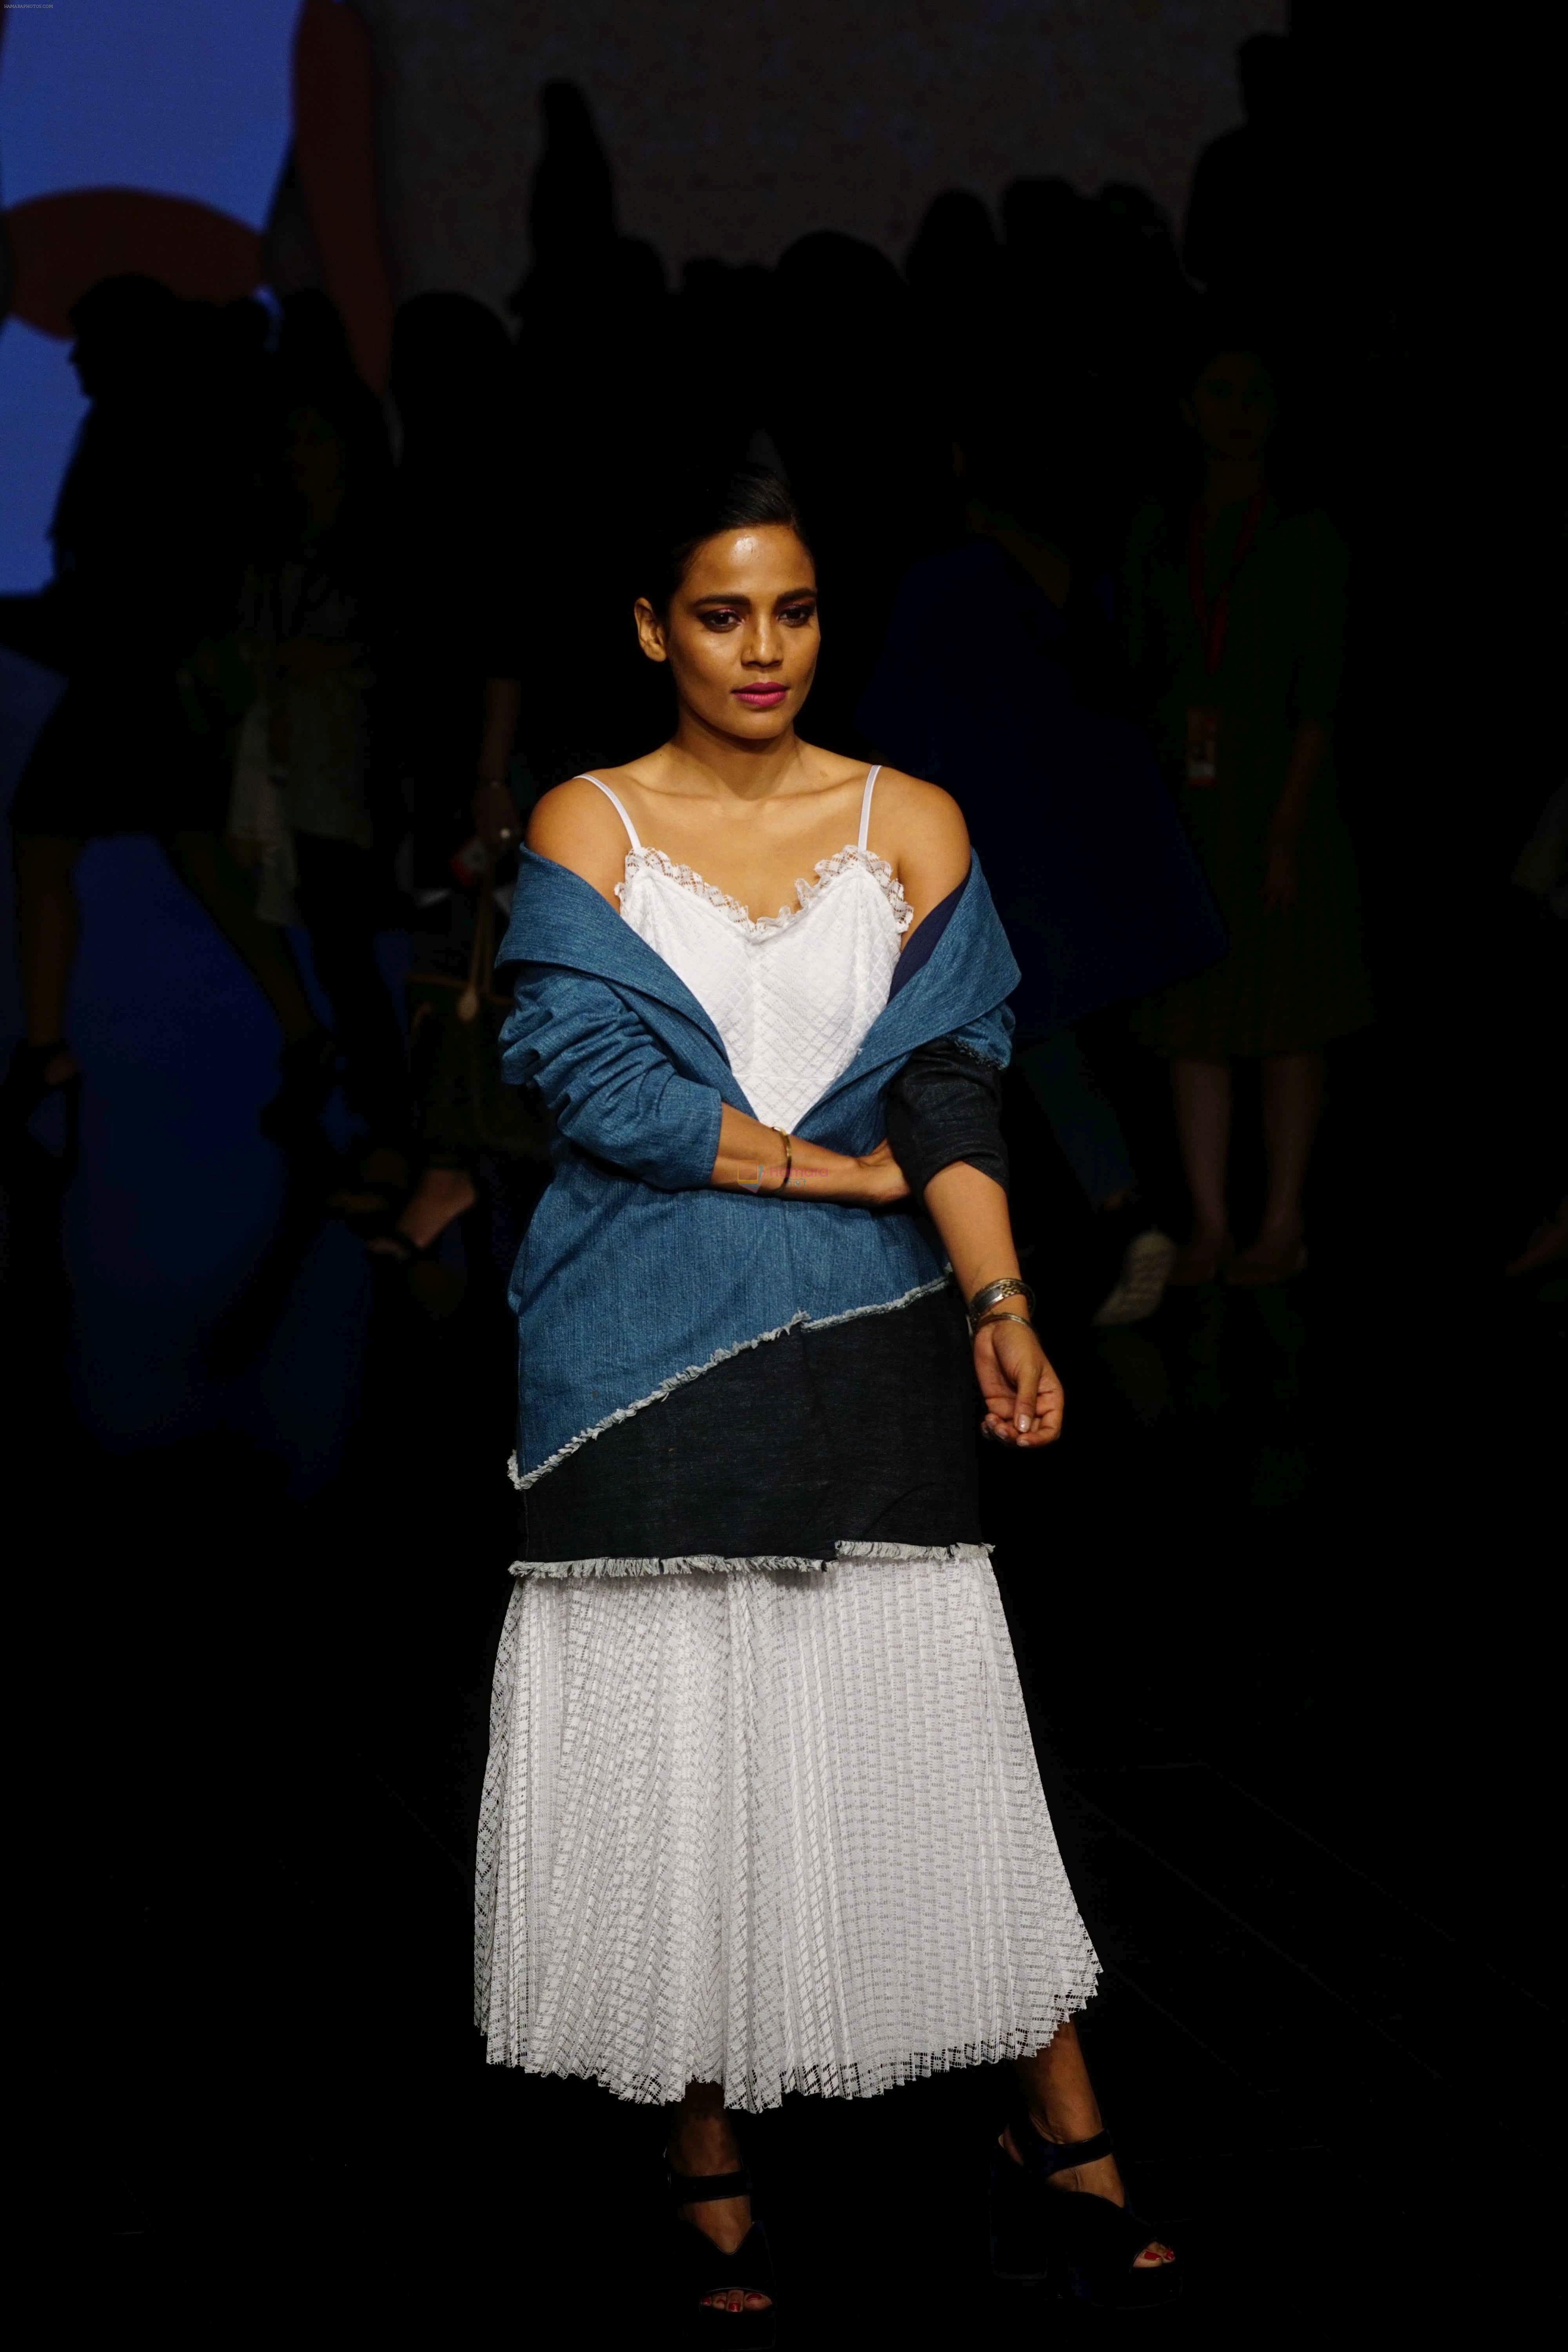 Priyanka Bose at Lakme Fashion Week 2018 on 31st Jan 2018